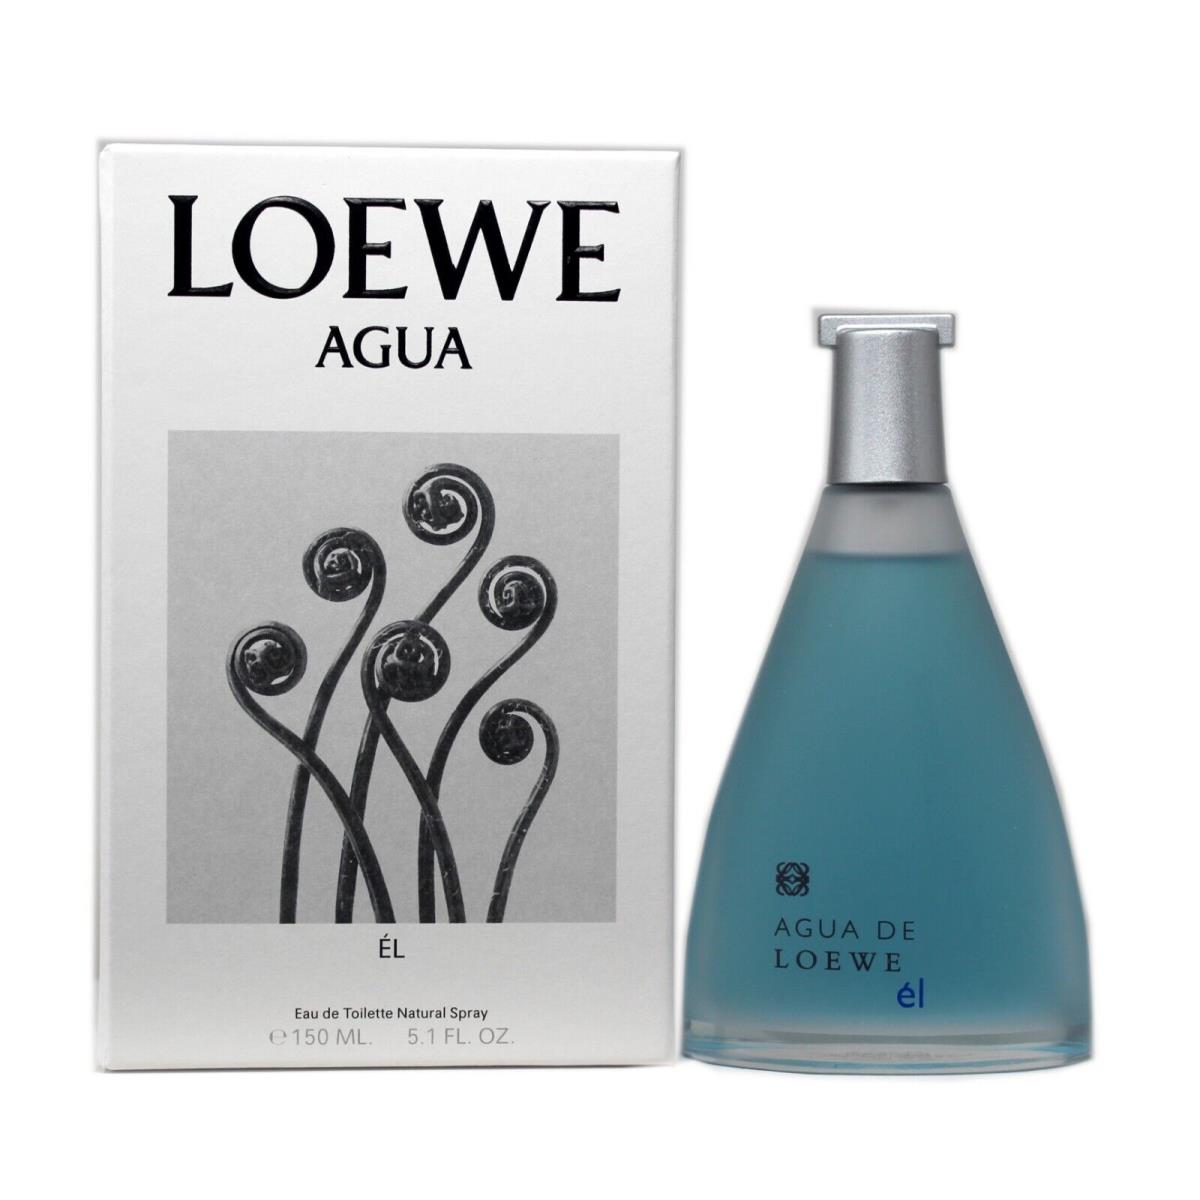 Loewe Agua EL For Him Eau DE Toilette Natural Spray 150 ML/5.1 Fl.oz